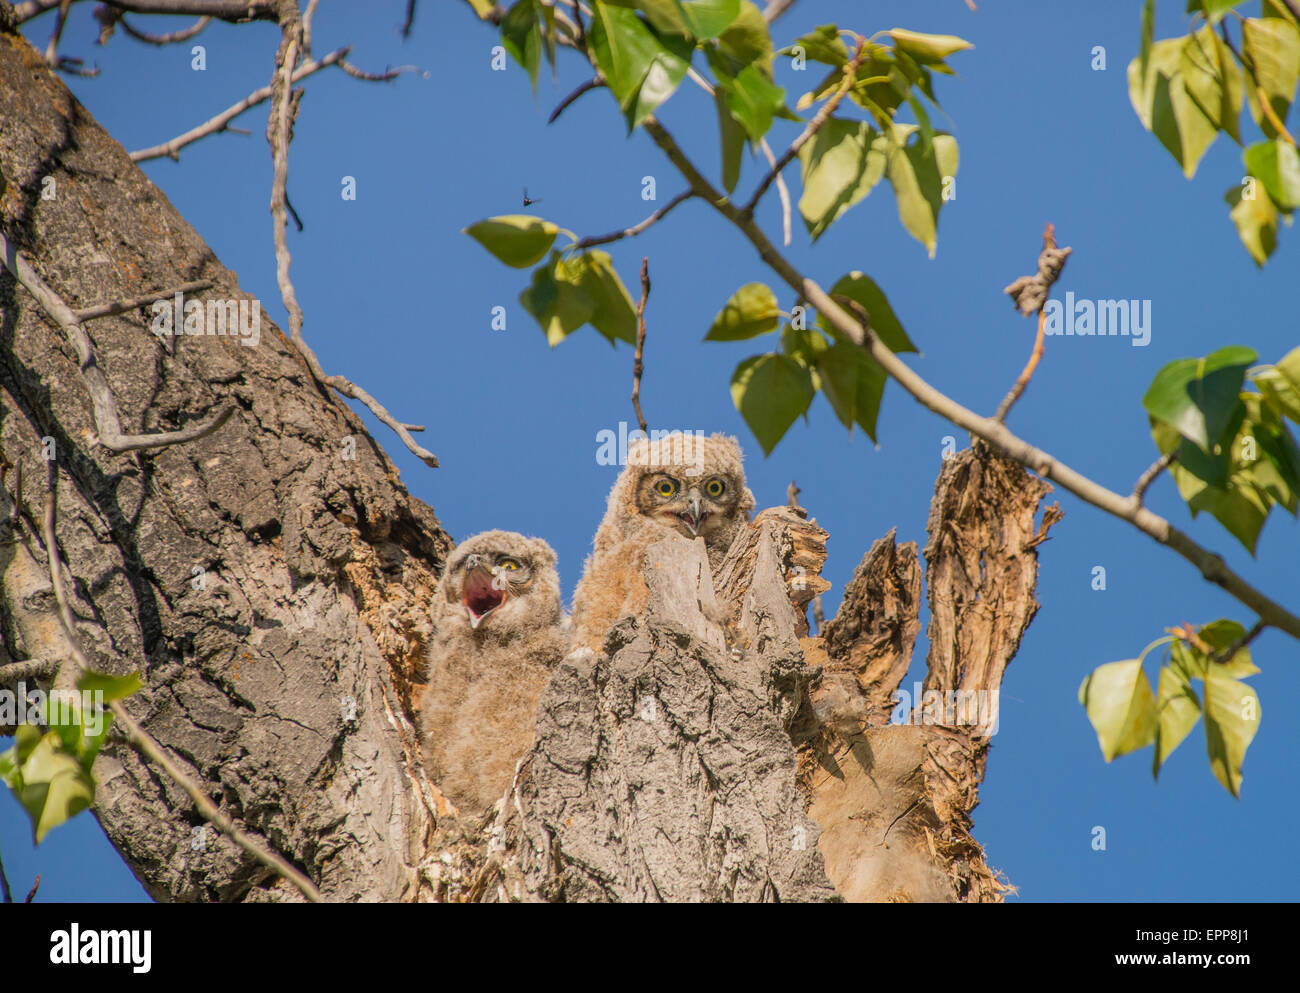 Civette,grande gufo cornuto, nuovo nato Owlets appollaiato nel nido della cavità ad albero. Fiume Boise Greenbelt, Boise, Idaho, Stati Uniti d'America Foto Stock